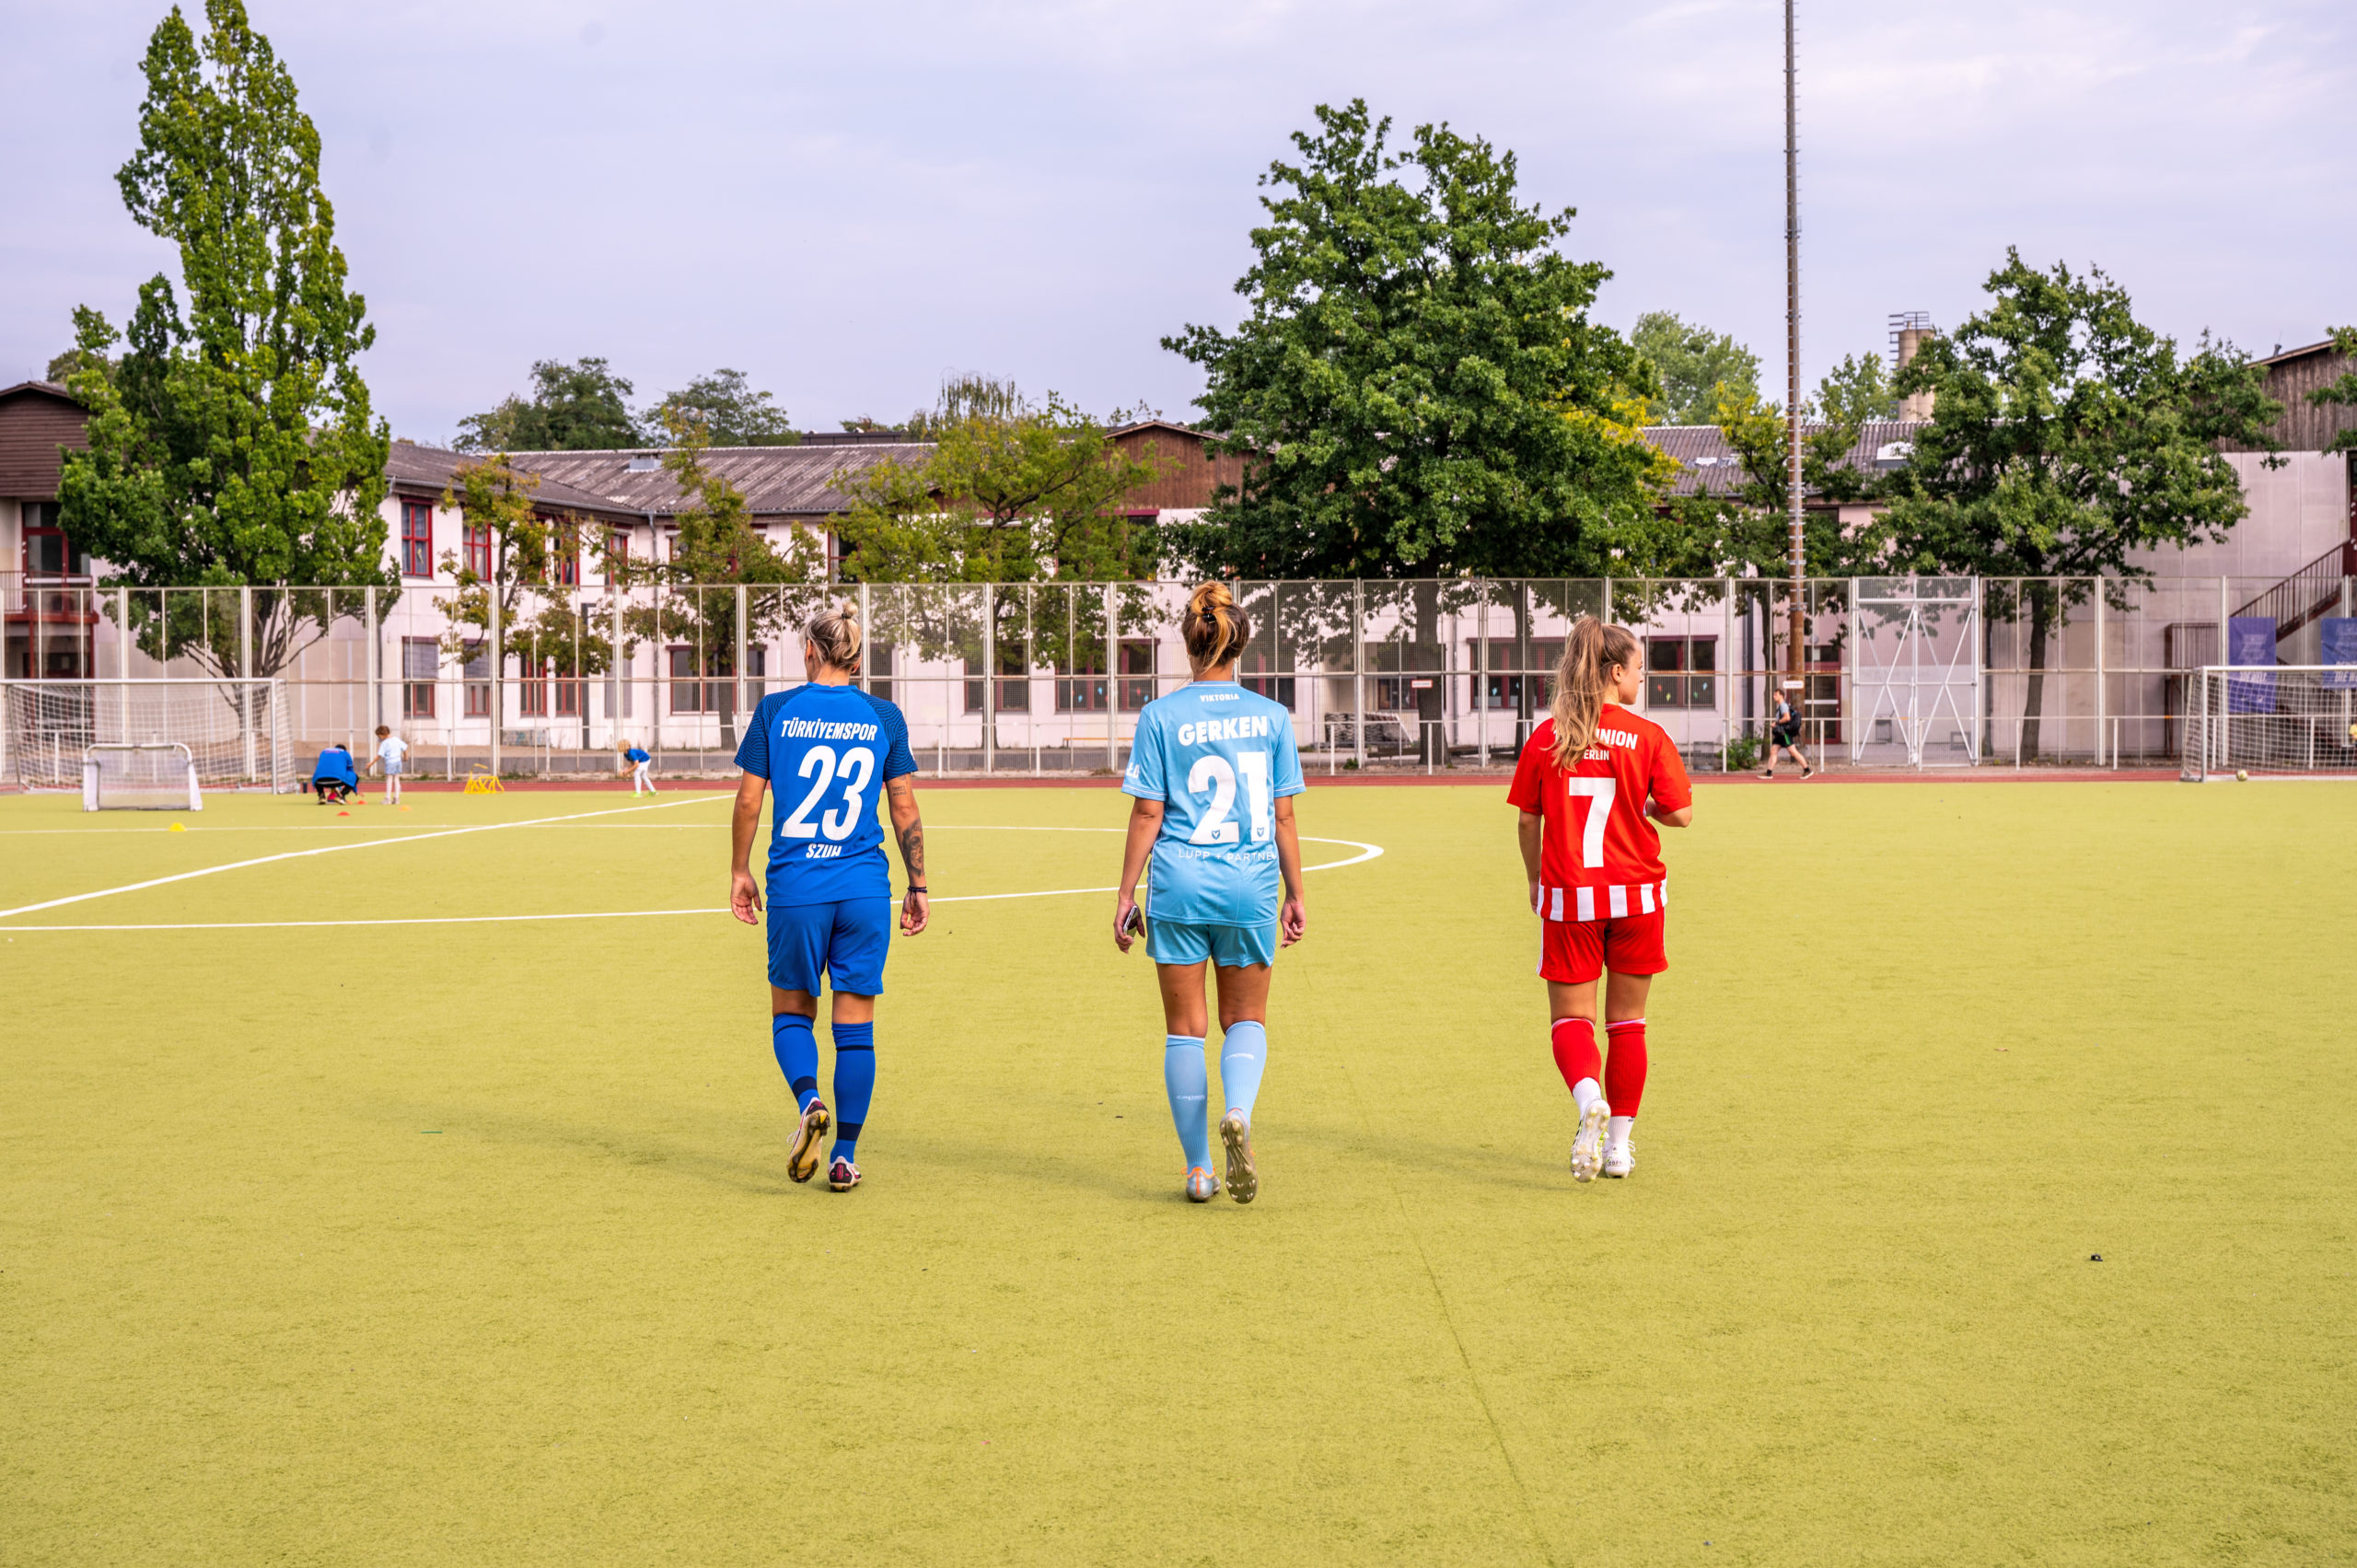 Türkiyemspor, Union, Viktoria: Wie Berlins Frauenteams Fußball erneuern